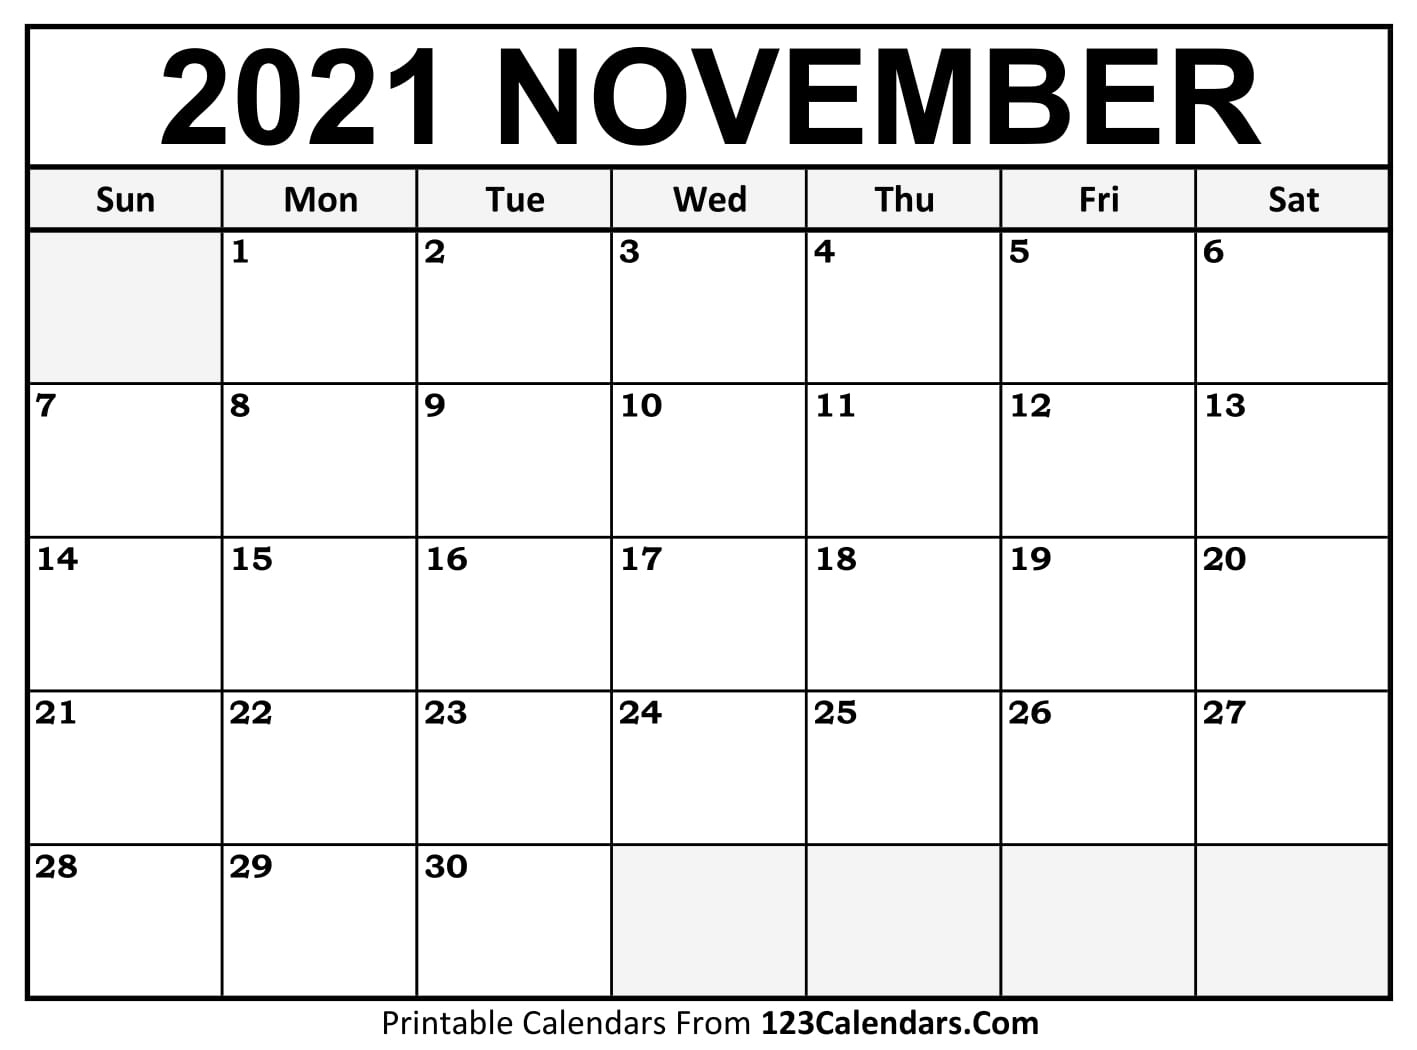 Printable November 2021 Calendar Templates - 123Calendars November 2021 Calendar Template